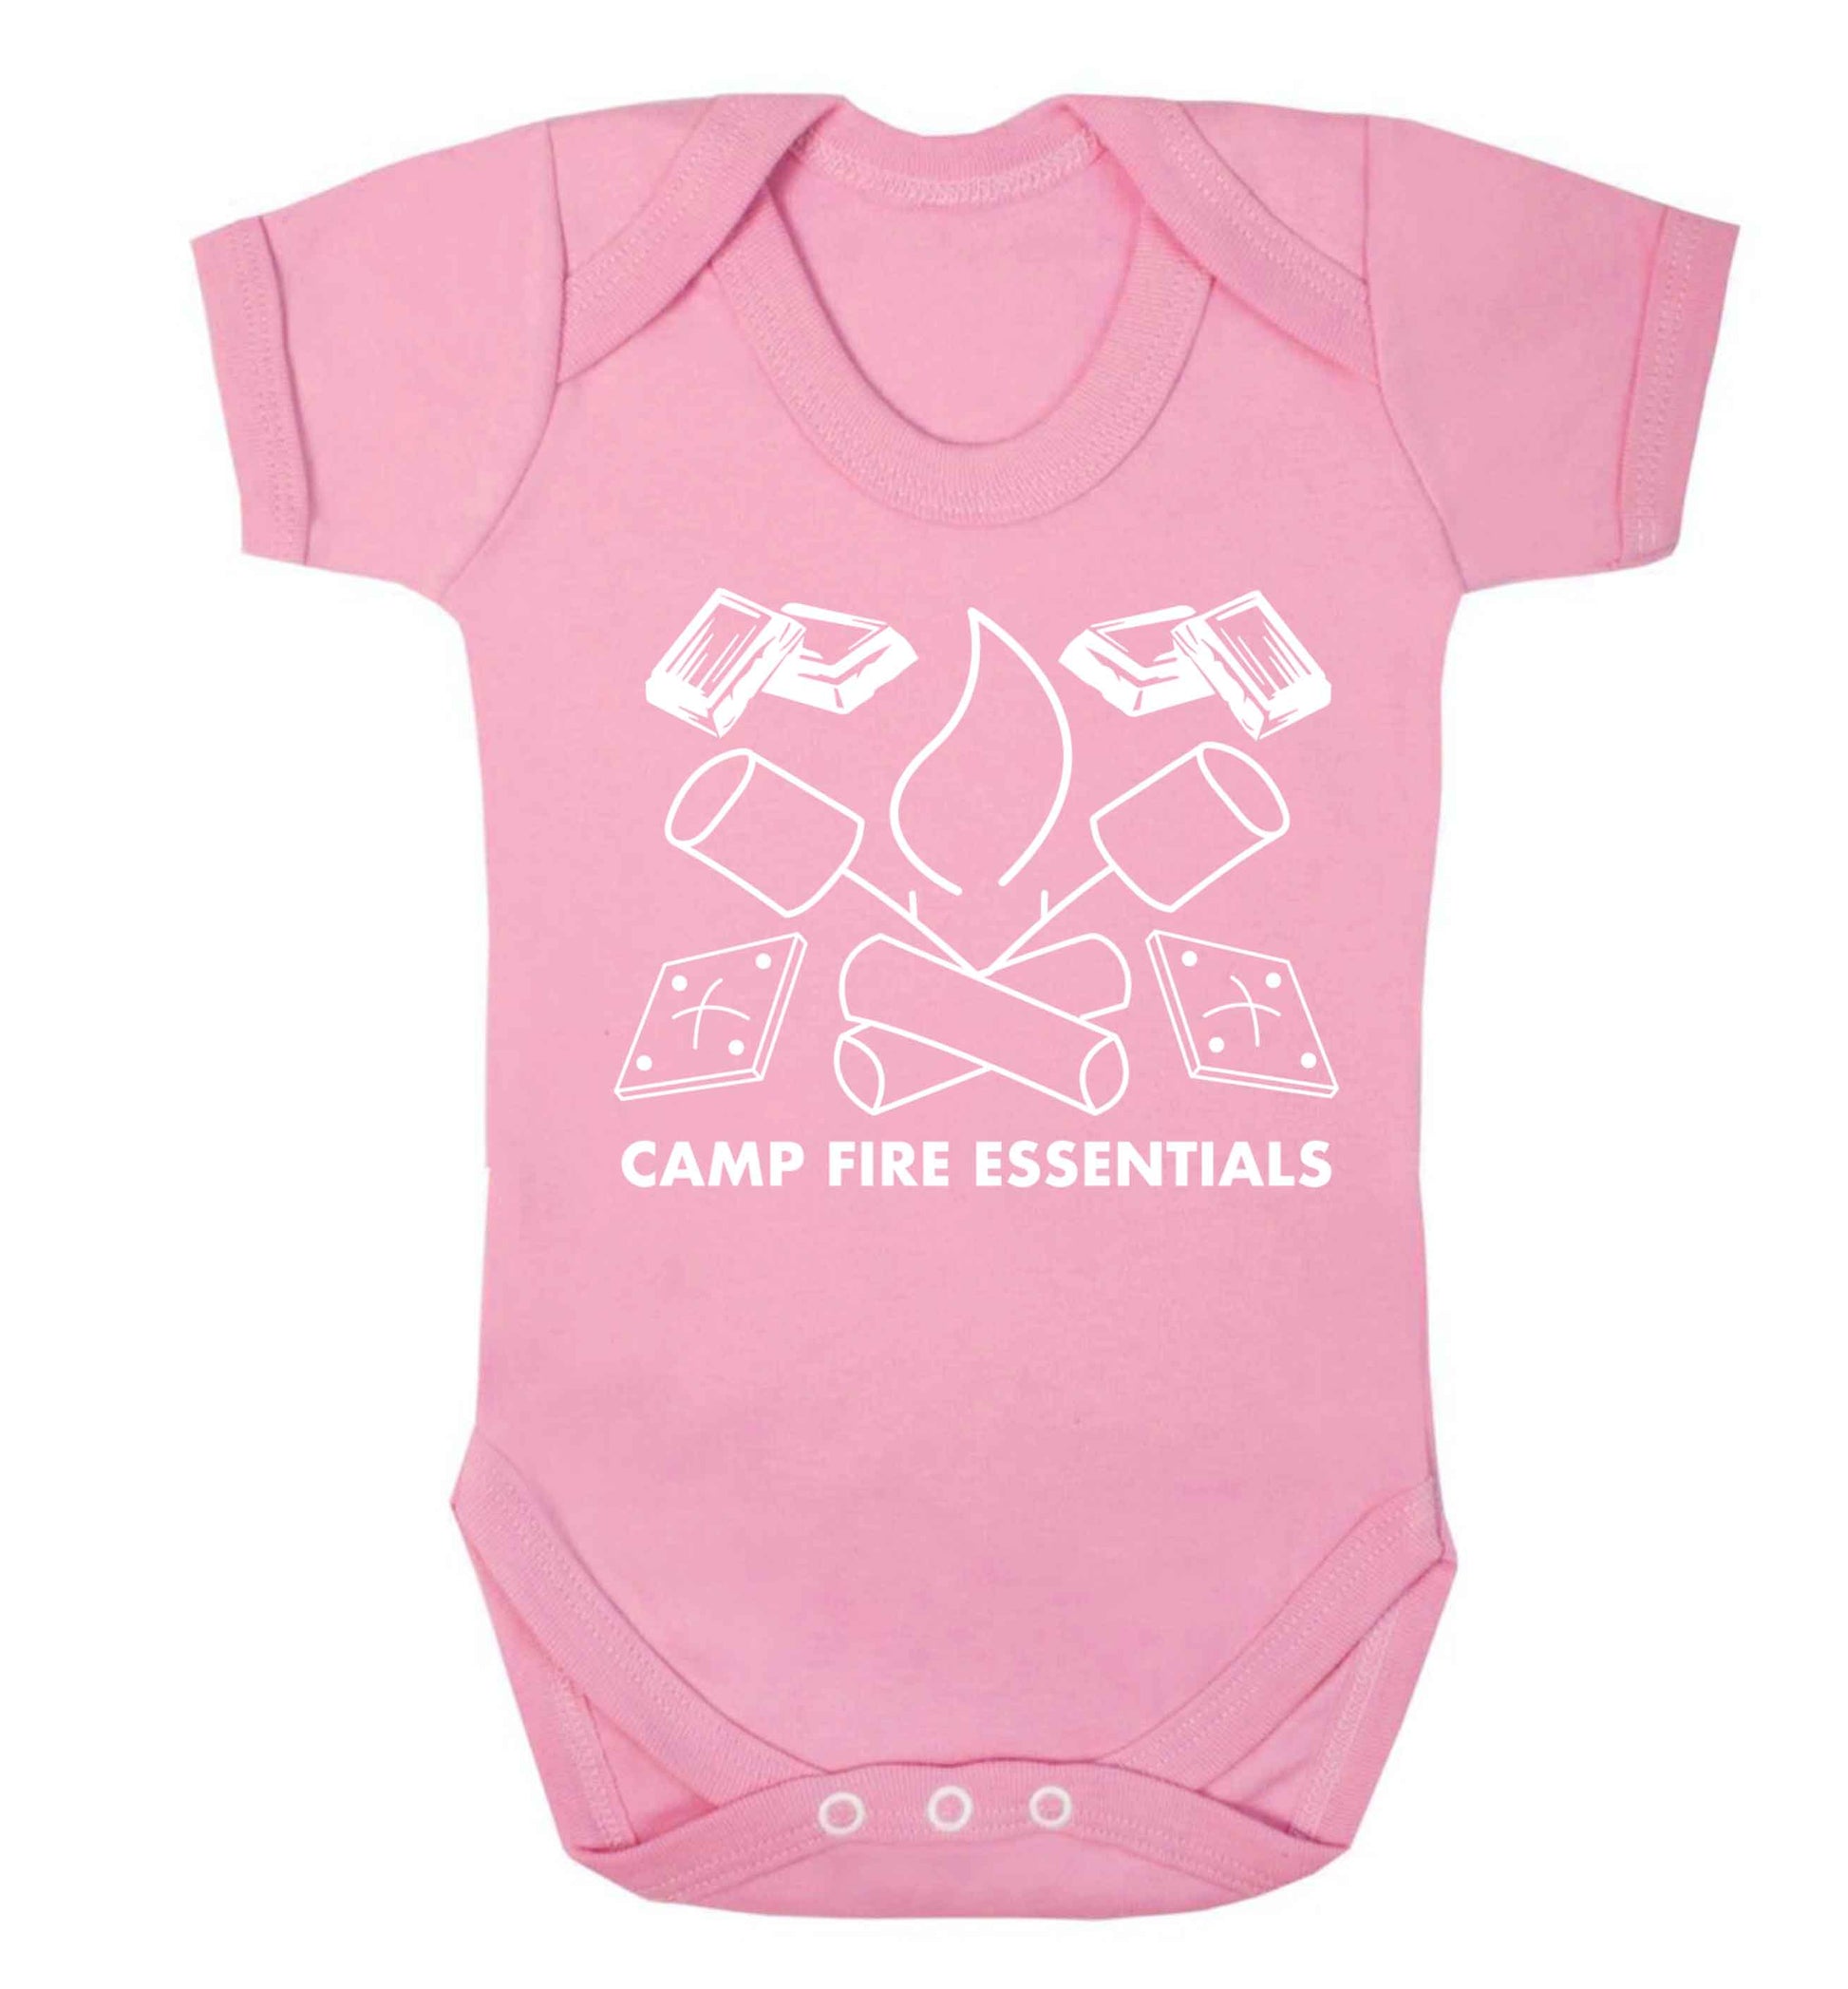 Campfire essentials Baby Vest pale pink 18-24 months